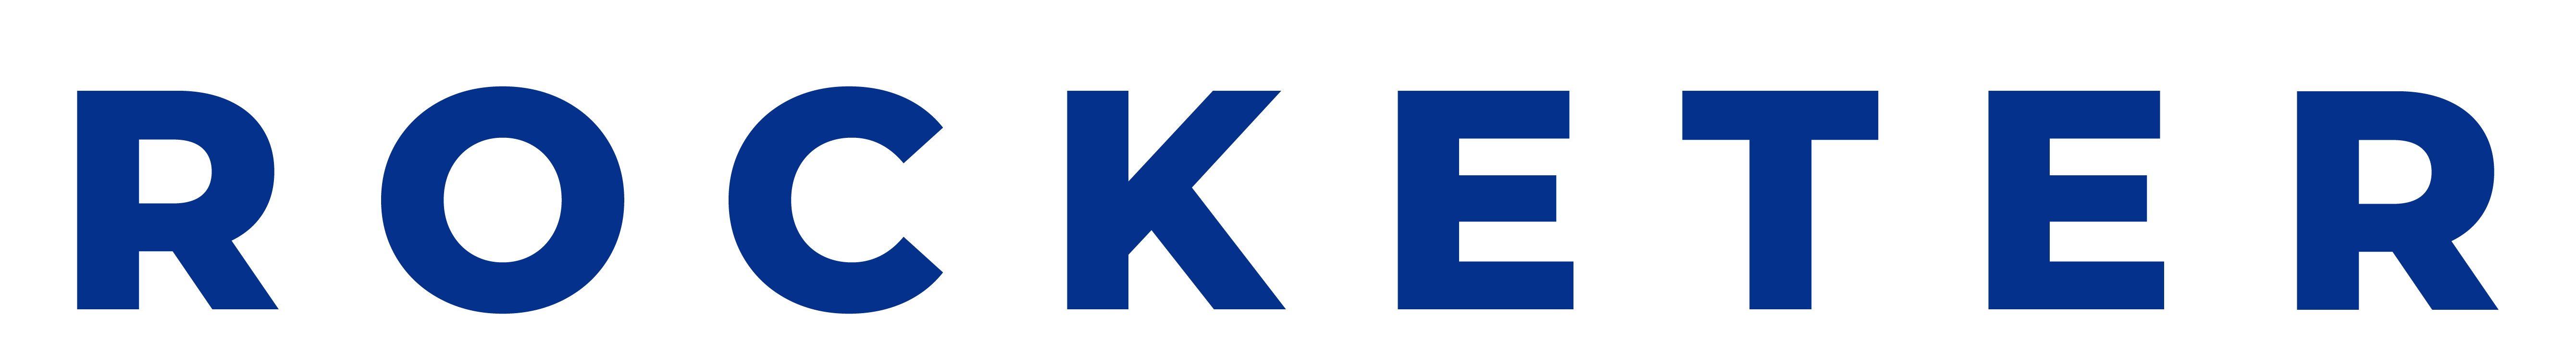 Rocketer Logo